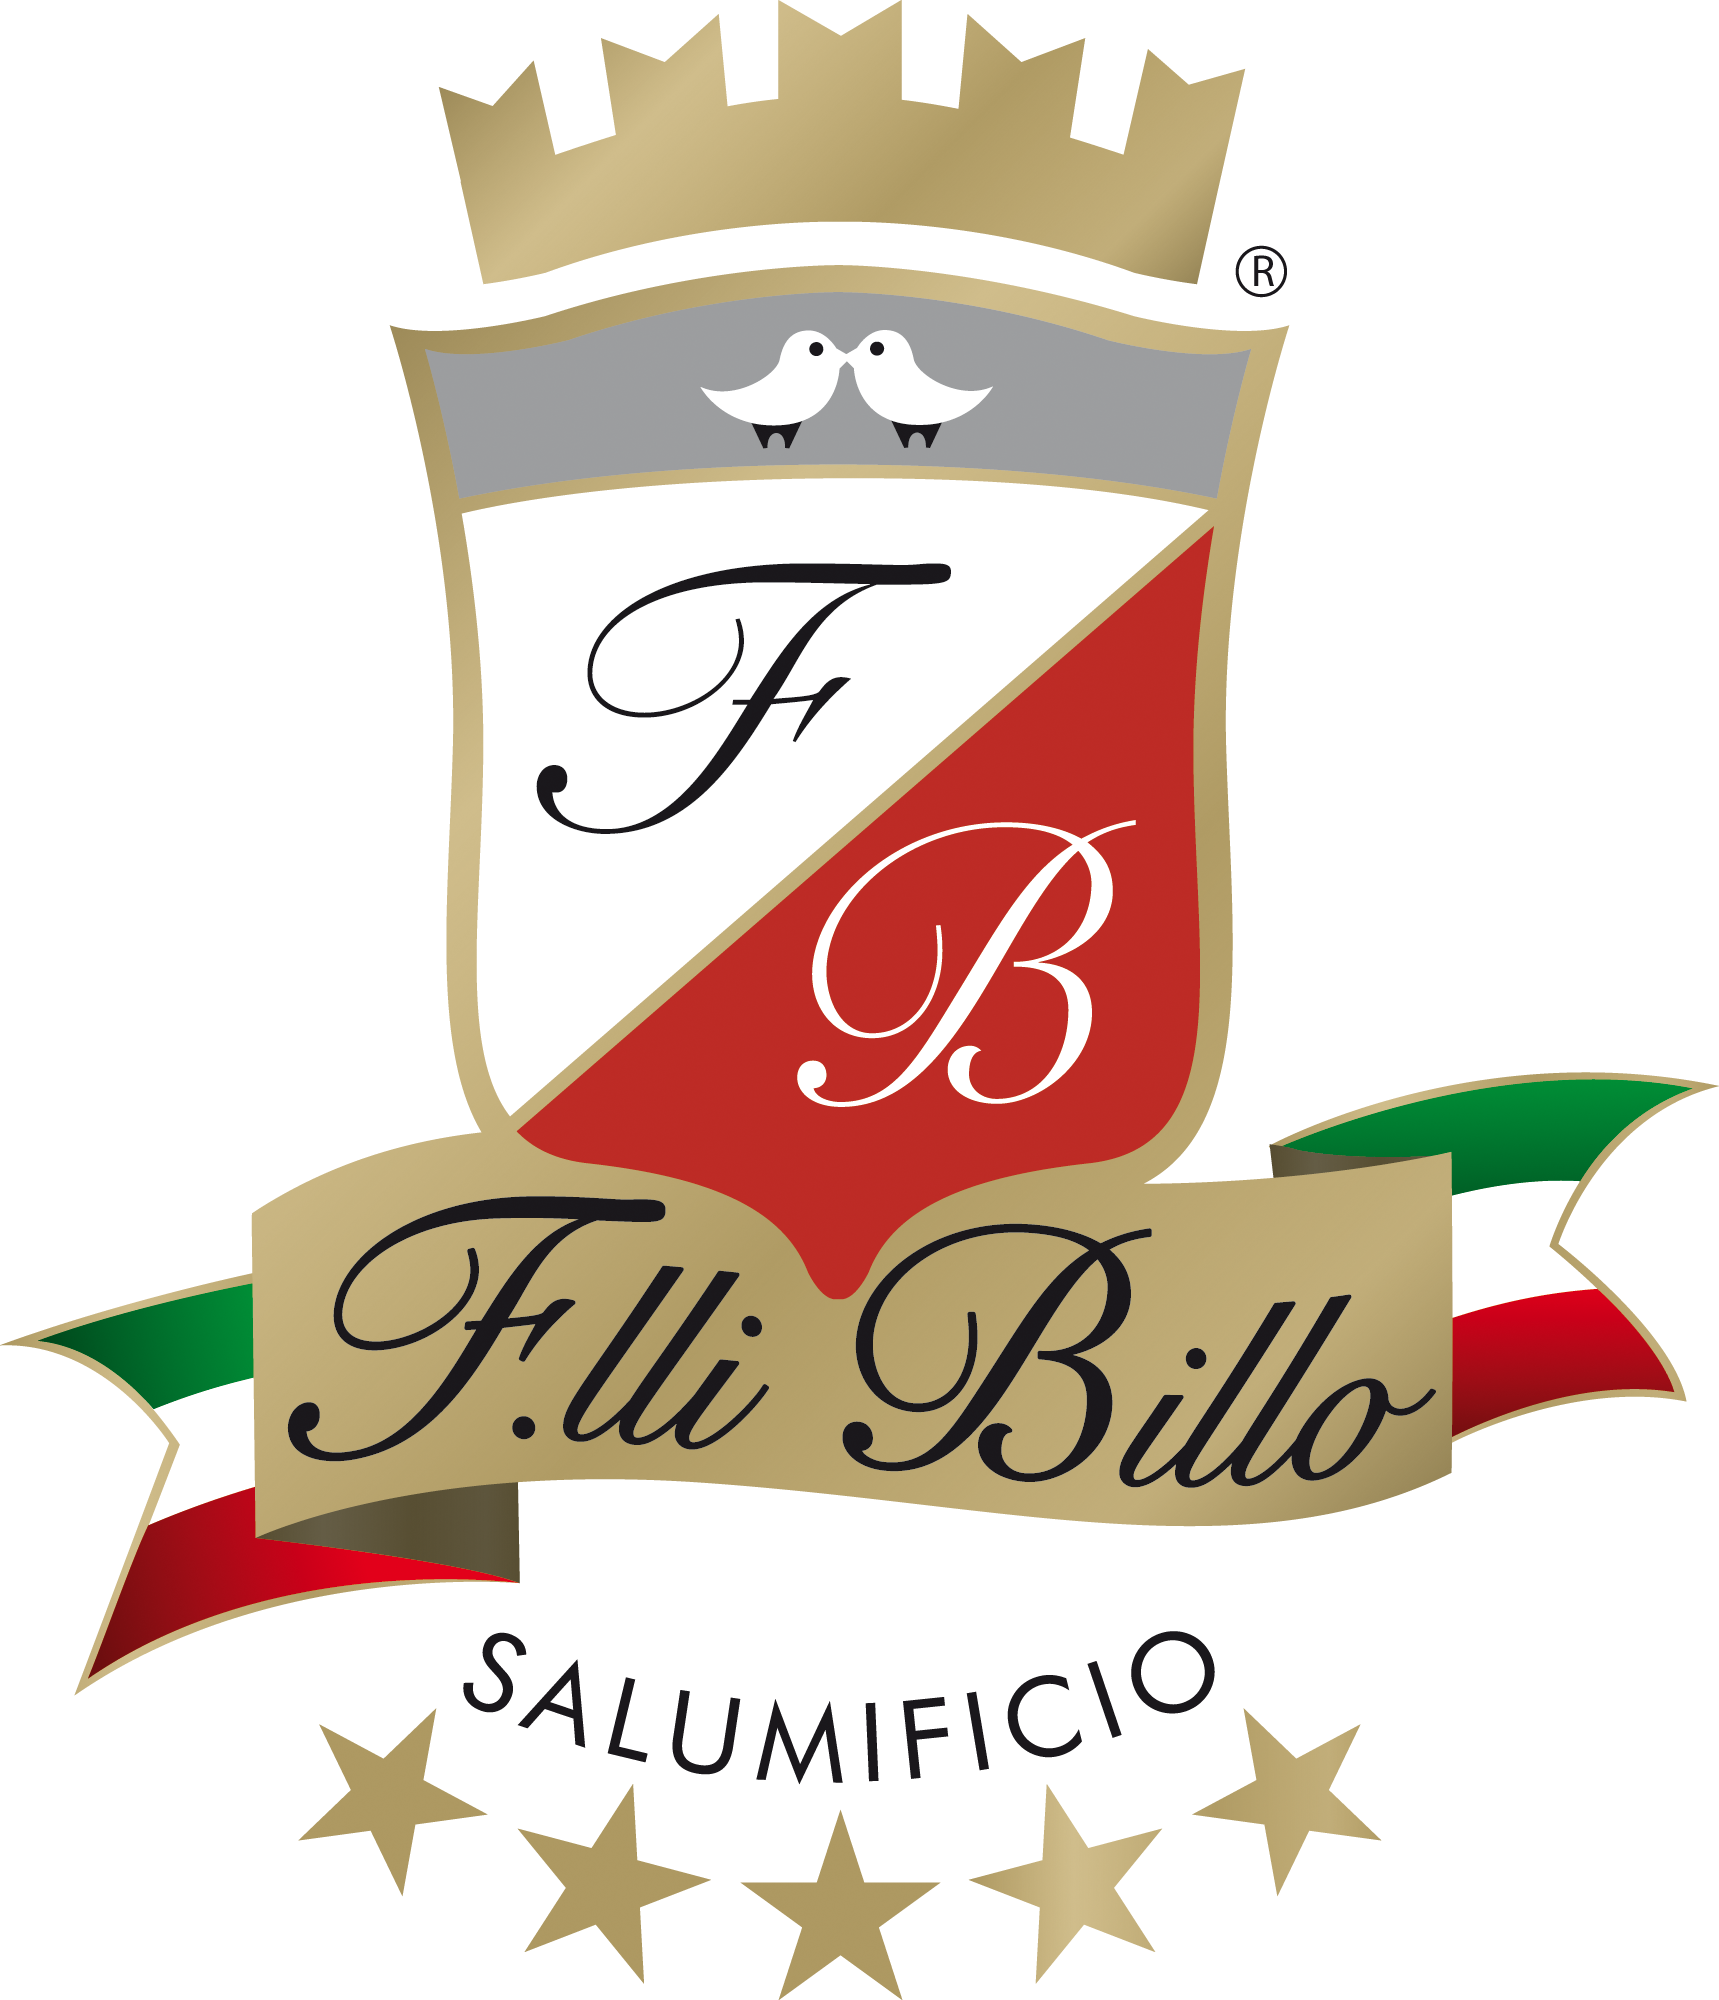 F.lli Billo